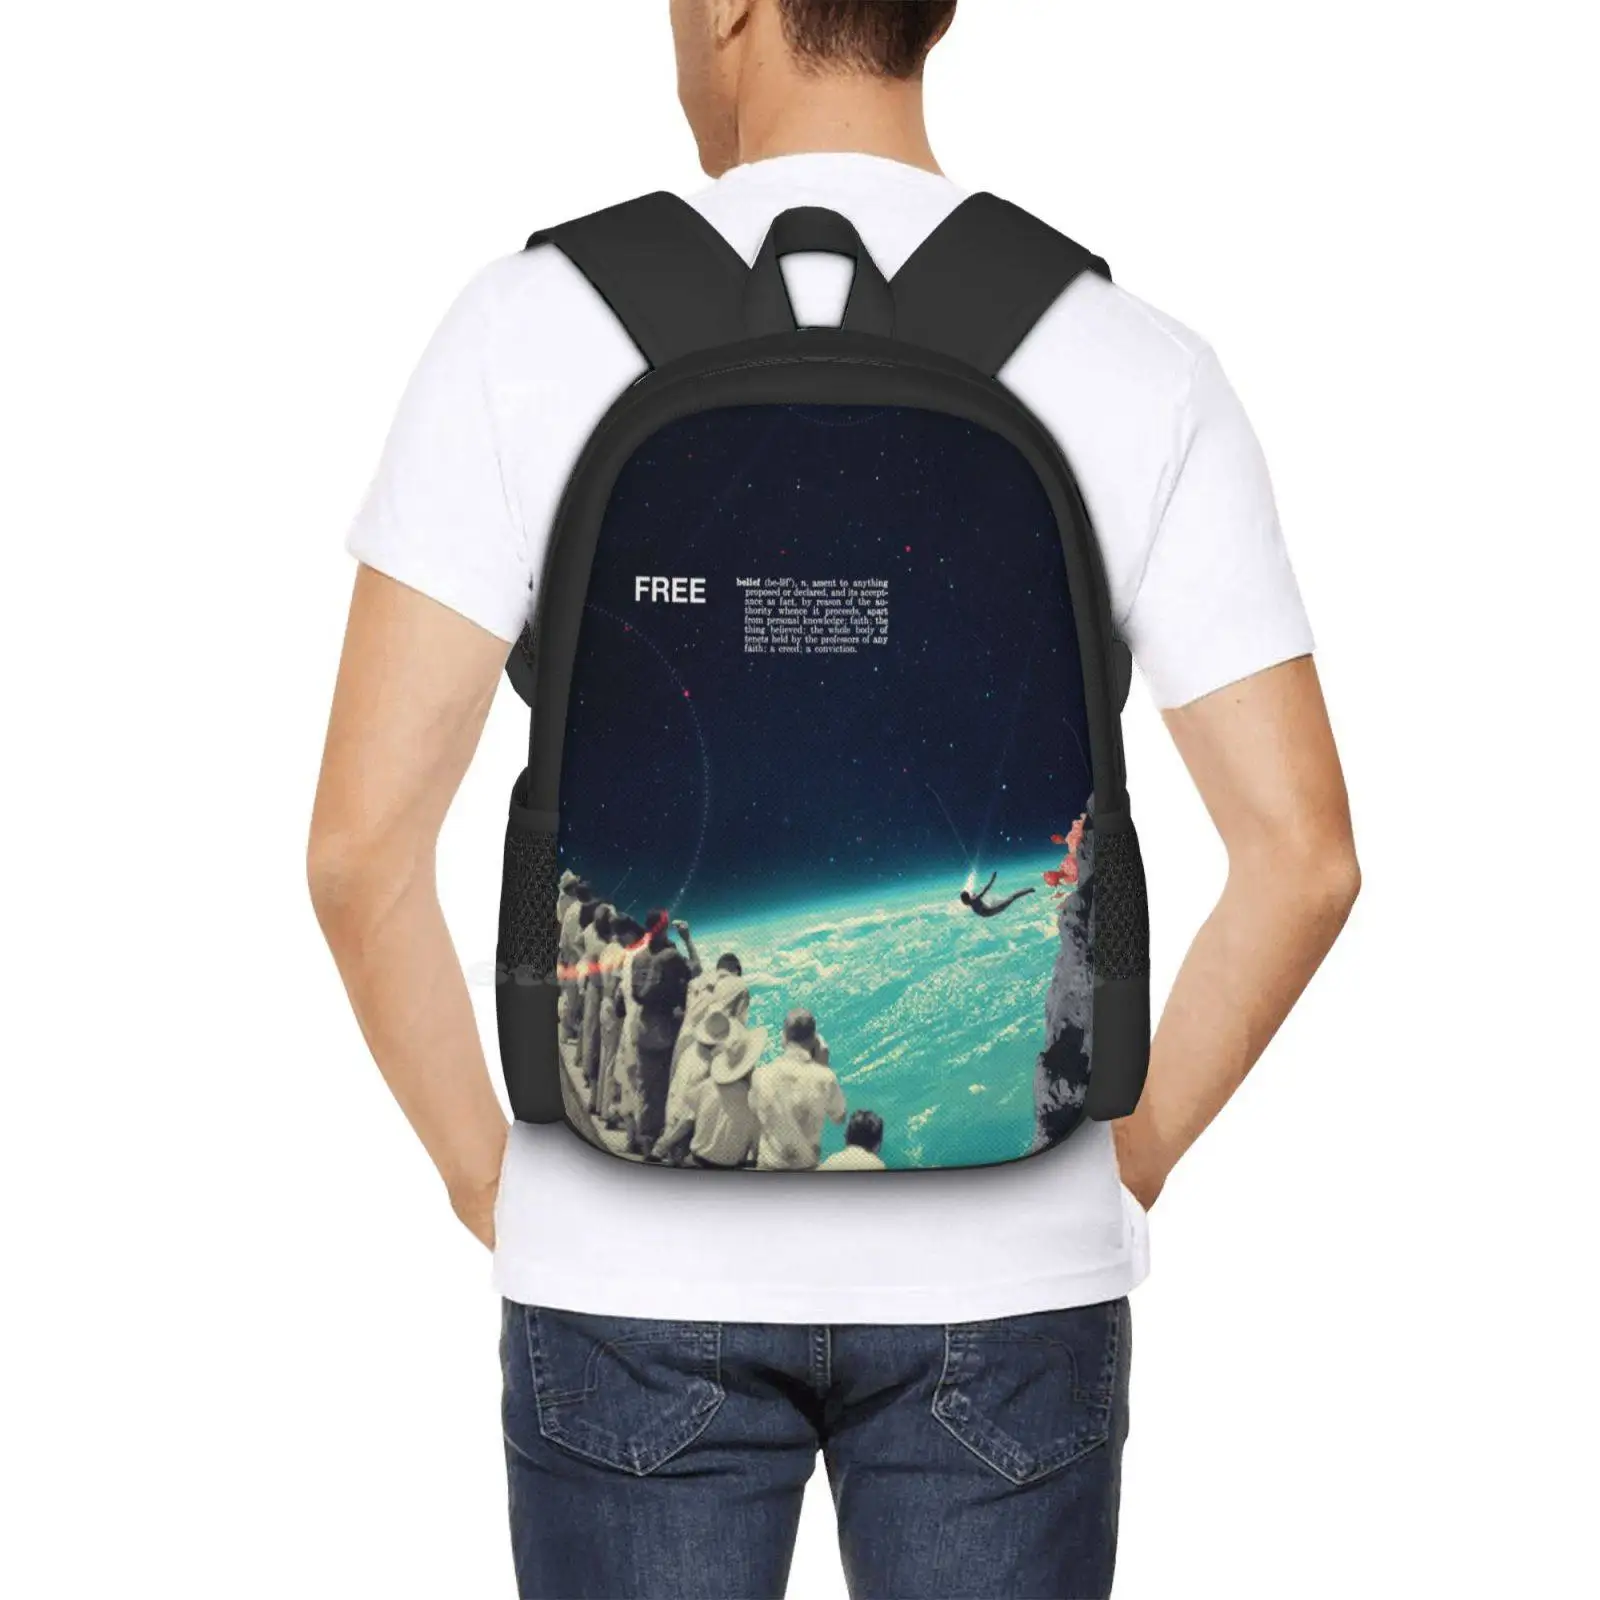 Бесплатные Новые поступления сумок унисекс Студенческая сумка рюкзак Винтажный Collageart Space People Sight Sky Diver Free Belief Universe Изображение 5